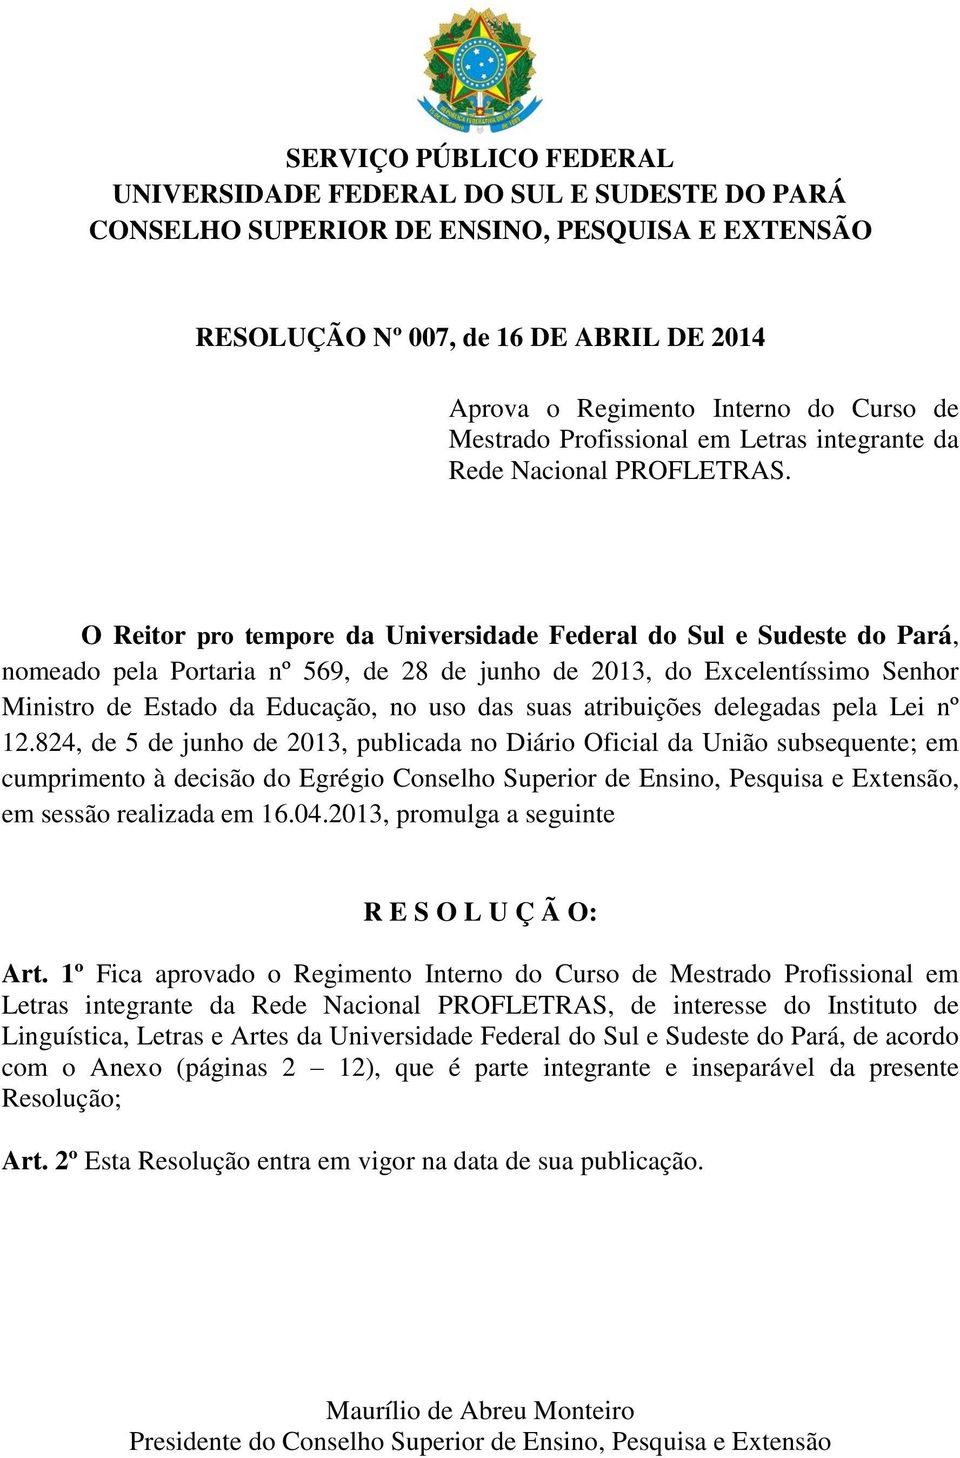 O Reitor pro tempore da Universidade Federal do Sul e Sudeste do Pará, nomeado pela Portaria nº 569, de 28 de junho de 2013, do Excelentíssimo Senhor Ministro de Estado da Educação, no uso das suas